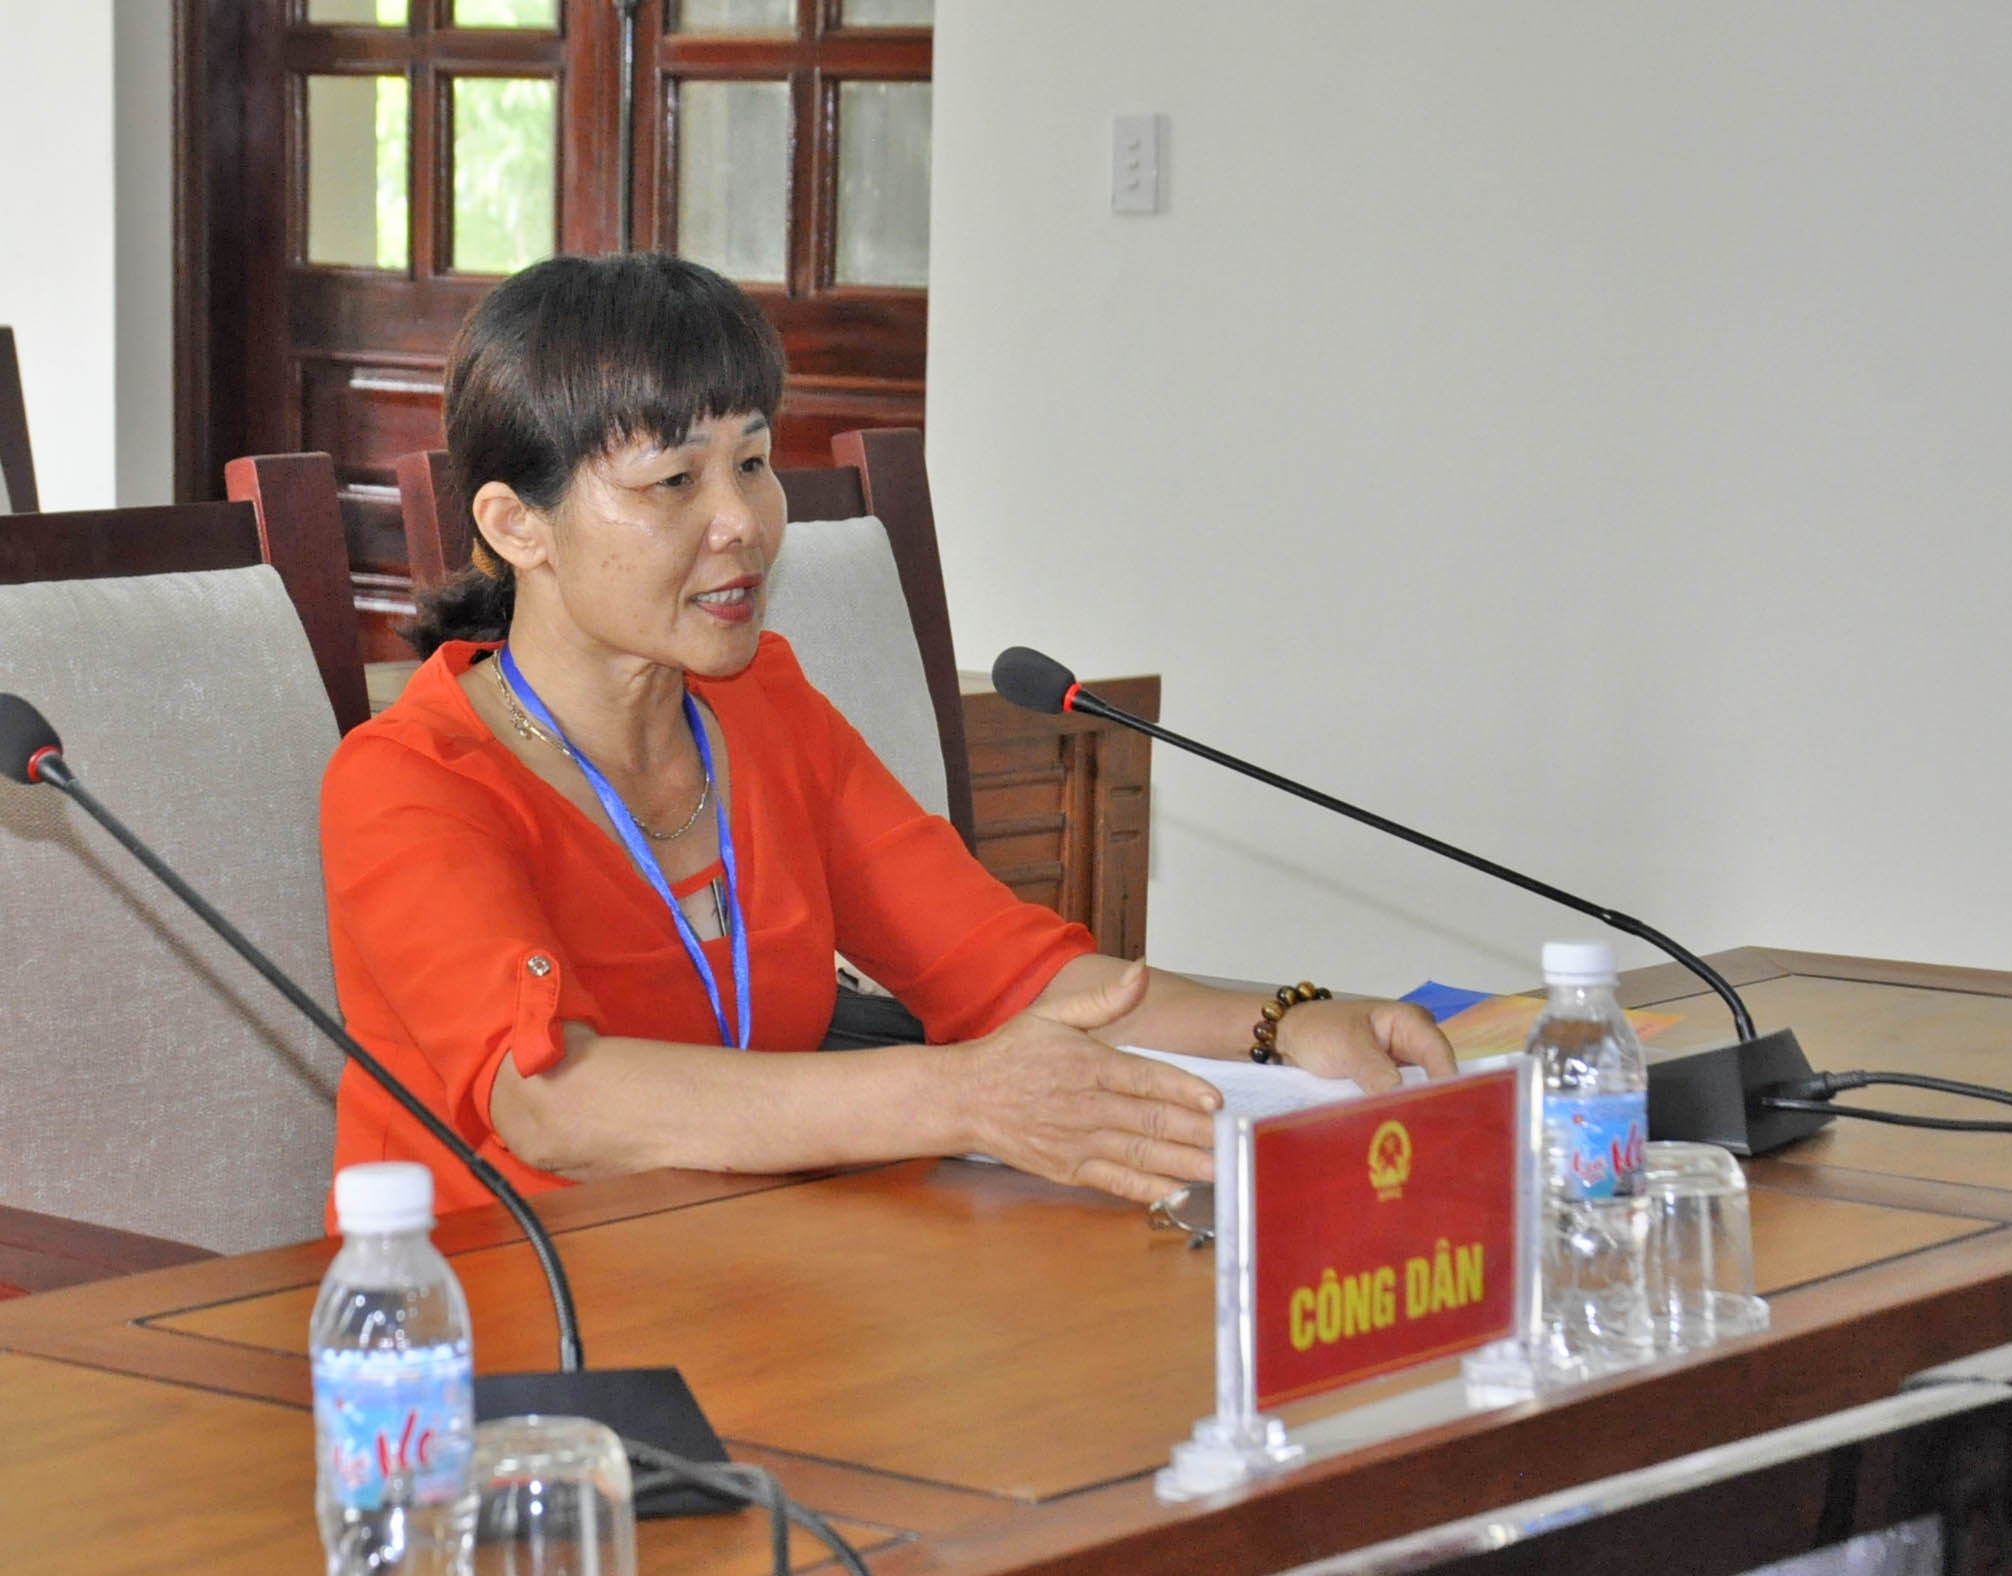 Bà Nguyễn Thị Hương Sen, tổ 2, khu 4, phường Vàng Danh, TP Uông Bí đề nghị giải quyết bồi thường thiệt hại cho căn nhà cấp 4 bà đang sinh sống